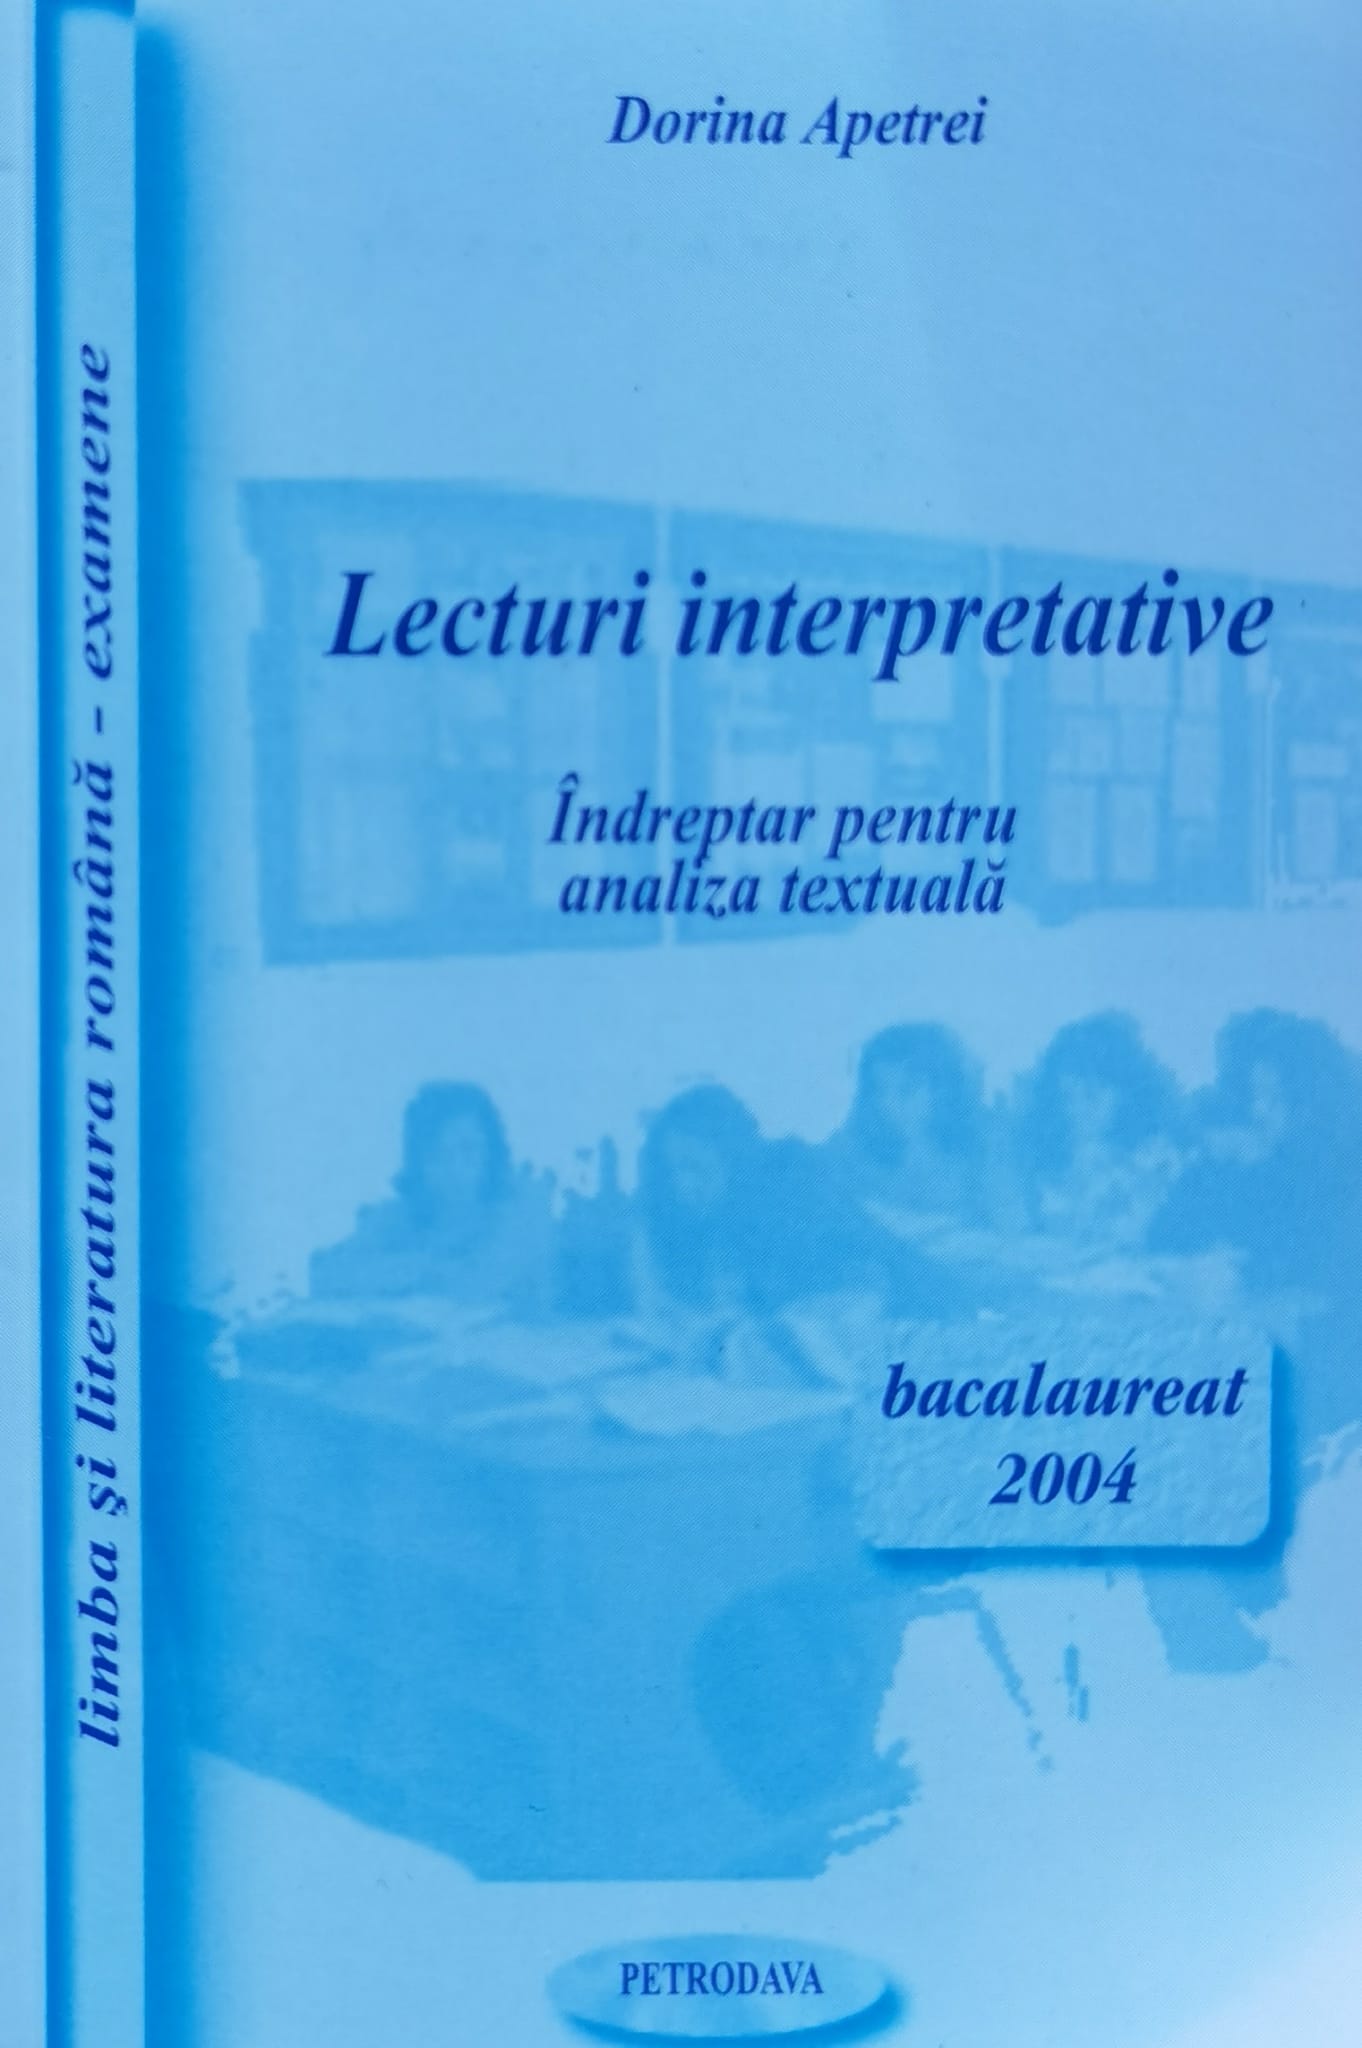 lecturi interpretative indreptar pentru analiza textuala bacalaureat 2003                            dorina apetrei                                                                                      